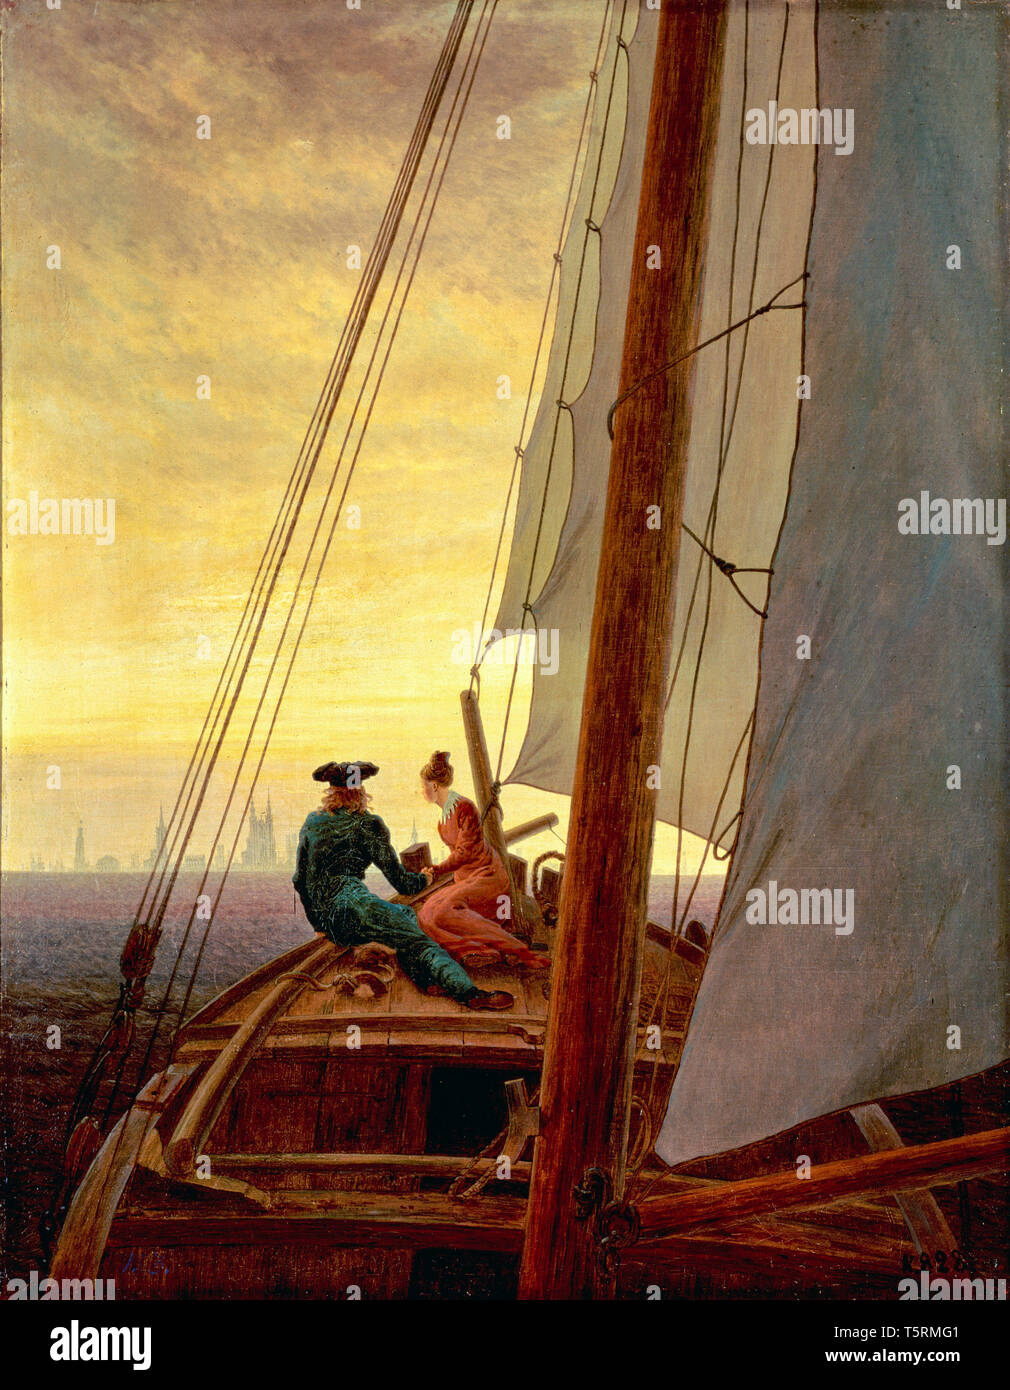 Caspar David Friedrich, sur le bateau à voile, peinture, vers 1818-1819 Banque D'Images